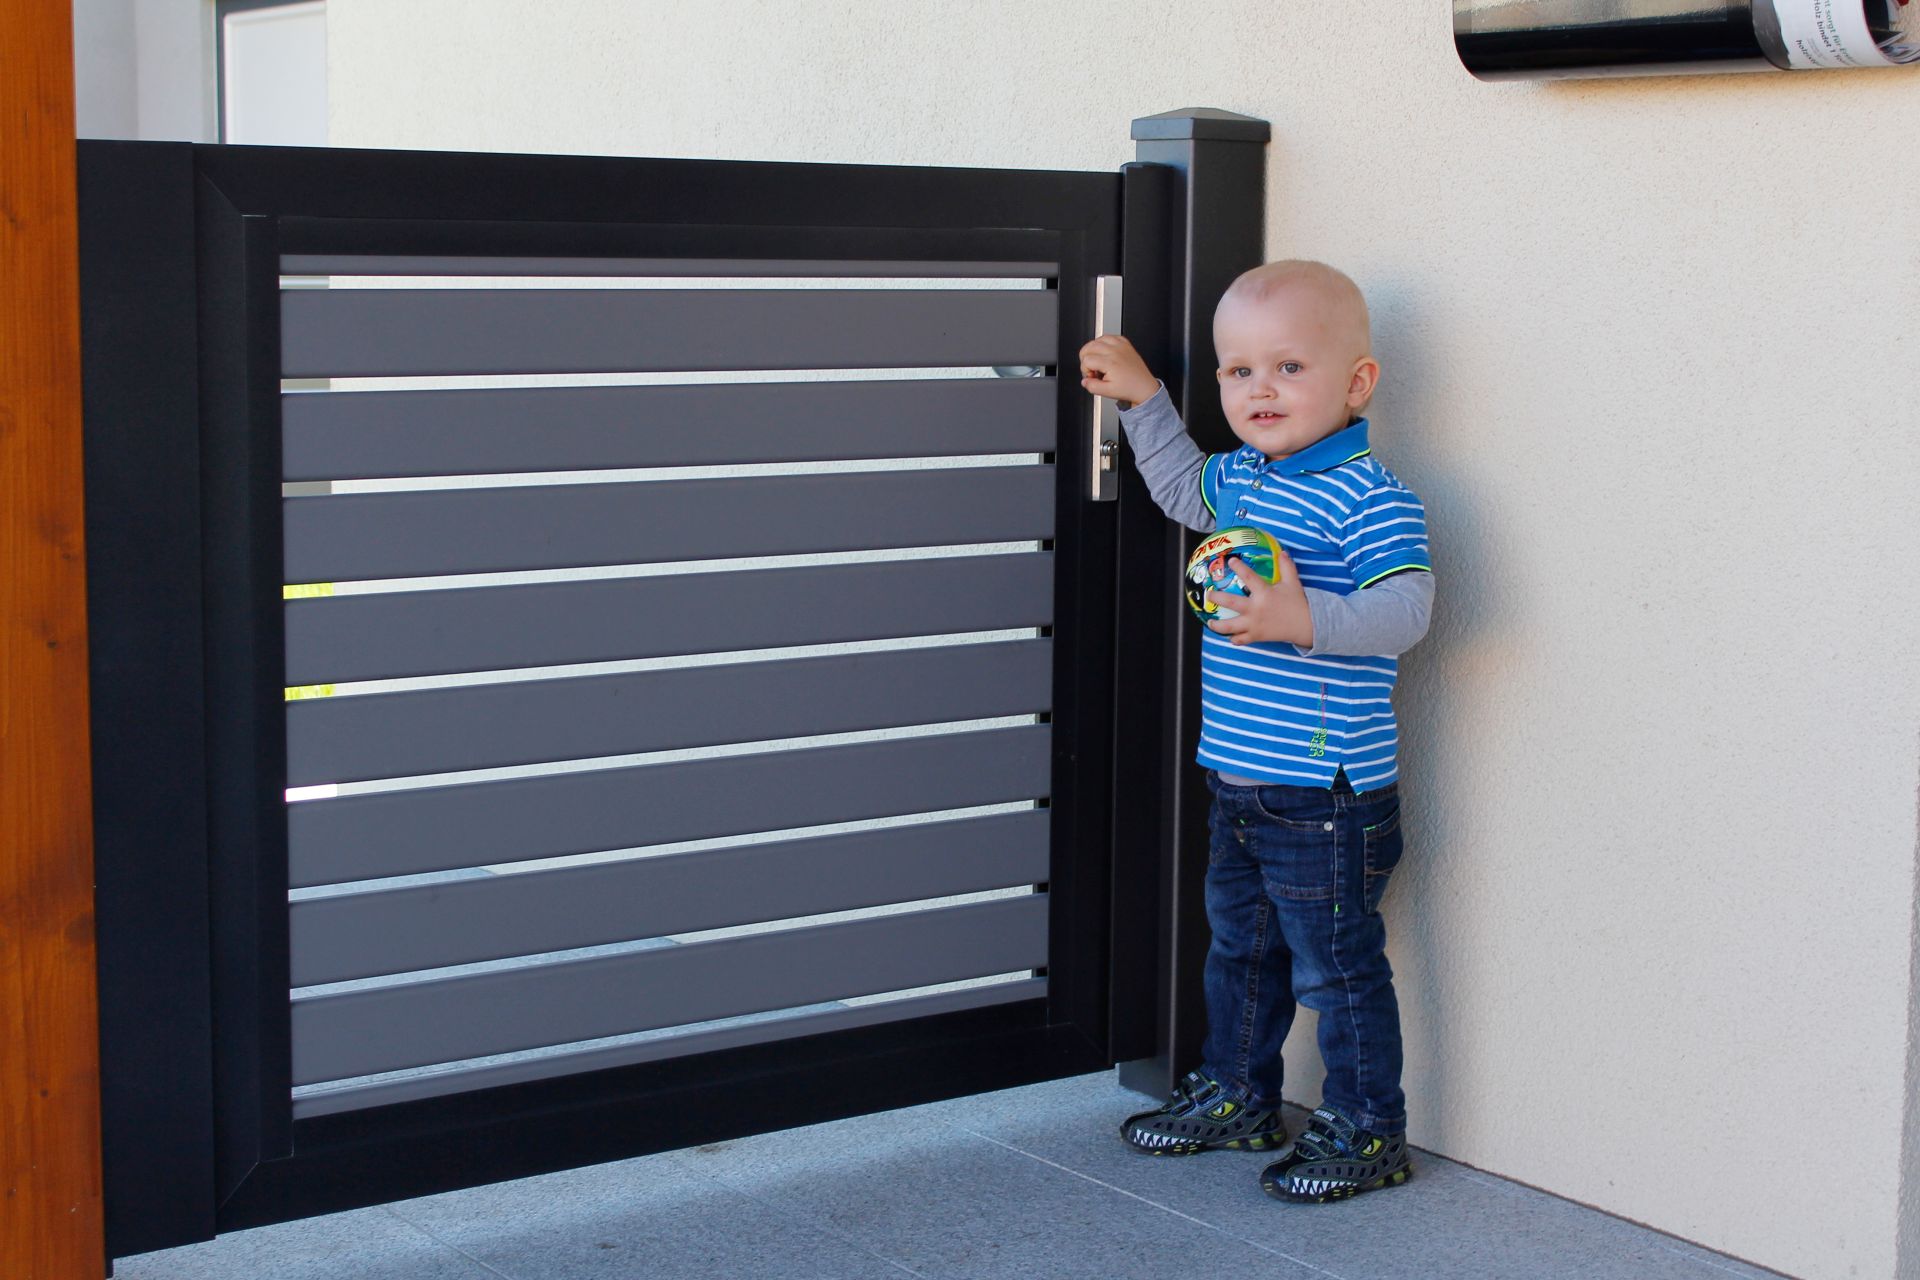 Gartentüre aus Latten in grau mit schwarzer Rahmenoptik, Modell Nouveau, Kleinkind öffnet die Gehtüre